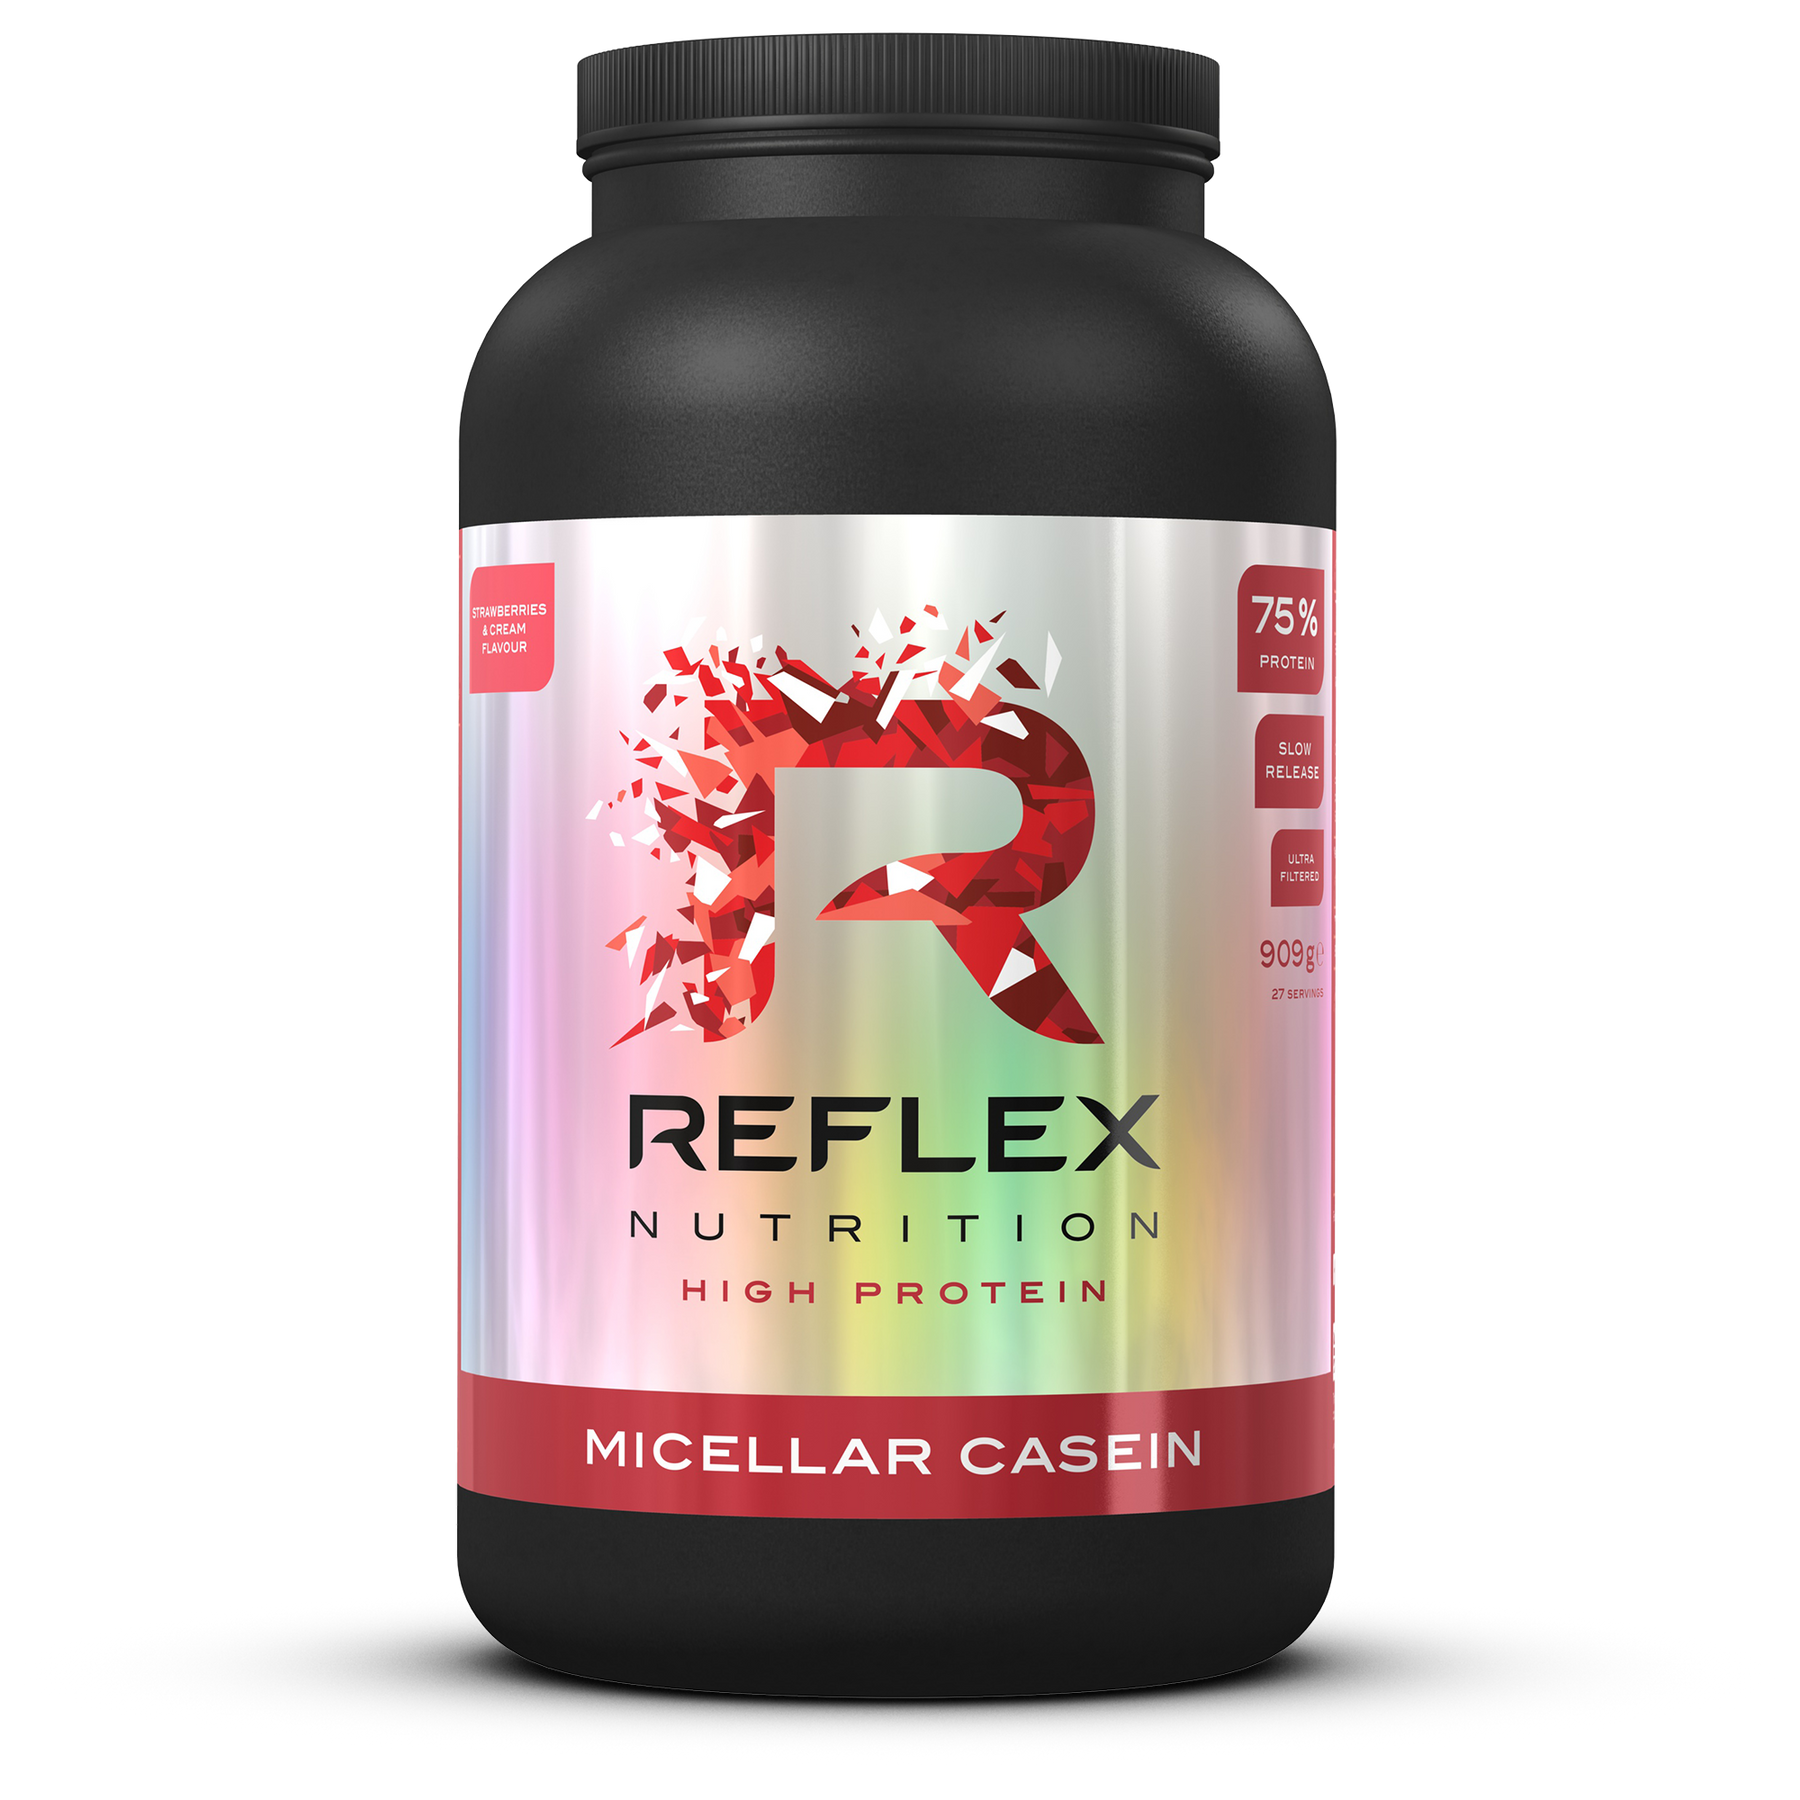 Reflex Nutrition Micellar Casein